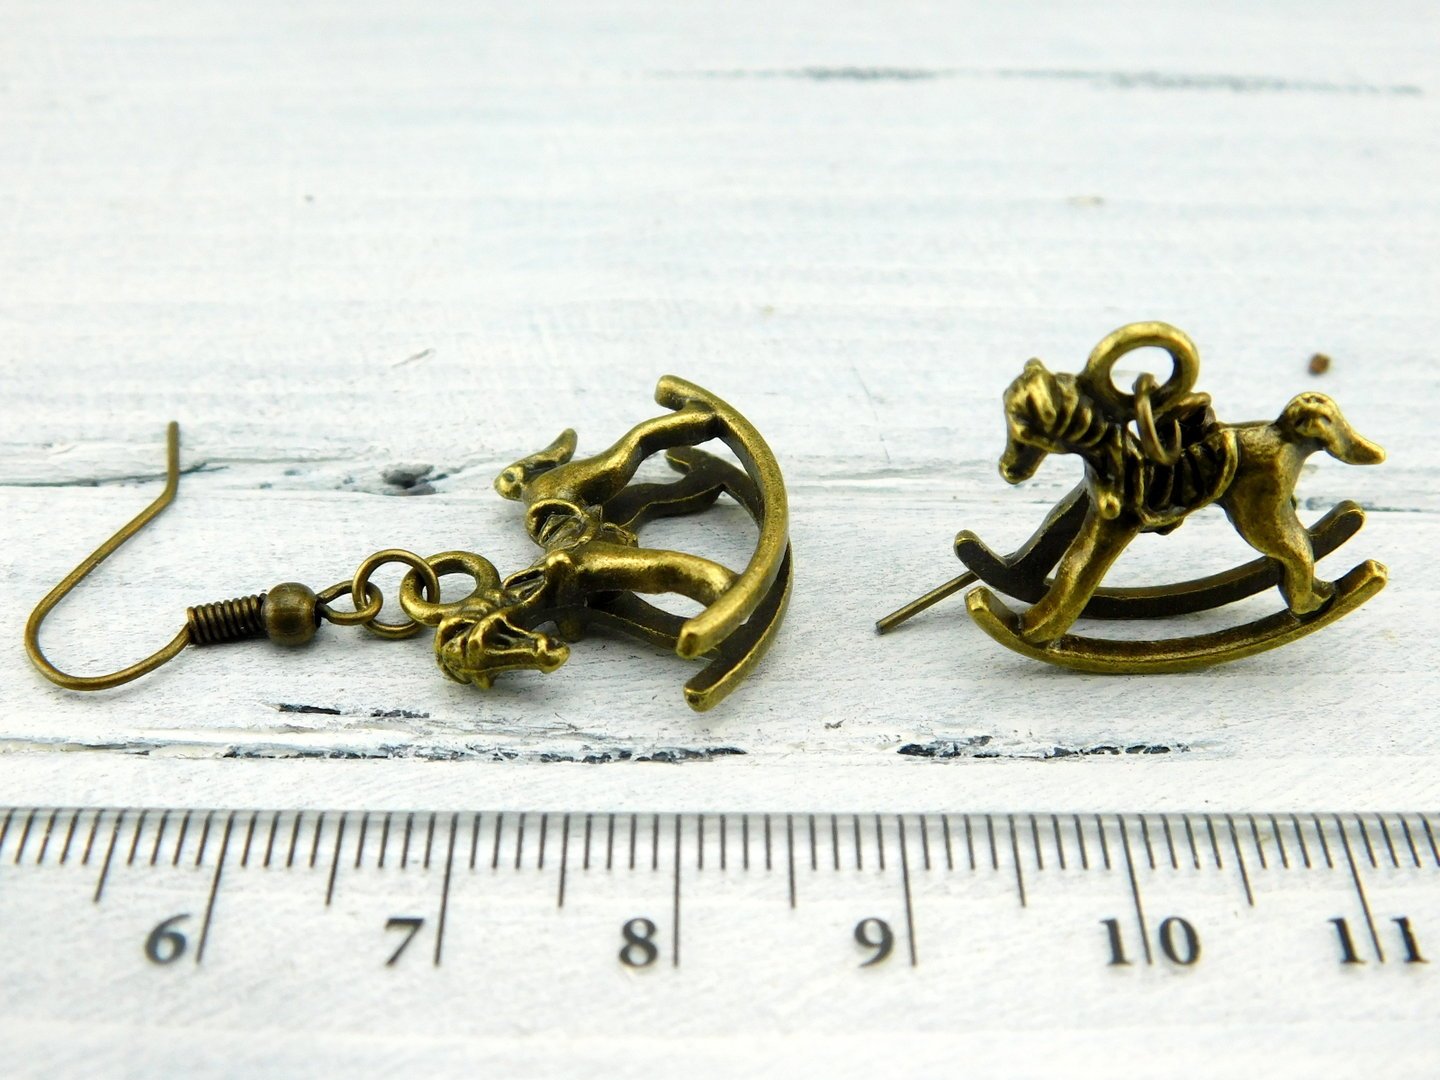 Ohrhänger "Schaukelpferdchen" aus bronzefarbenem Metall